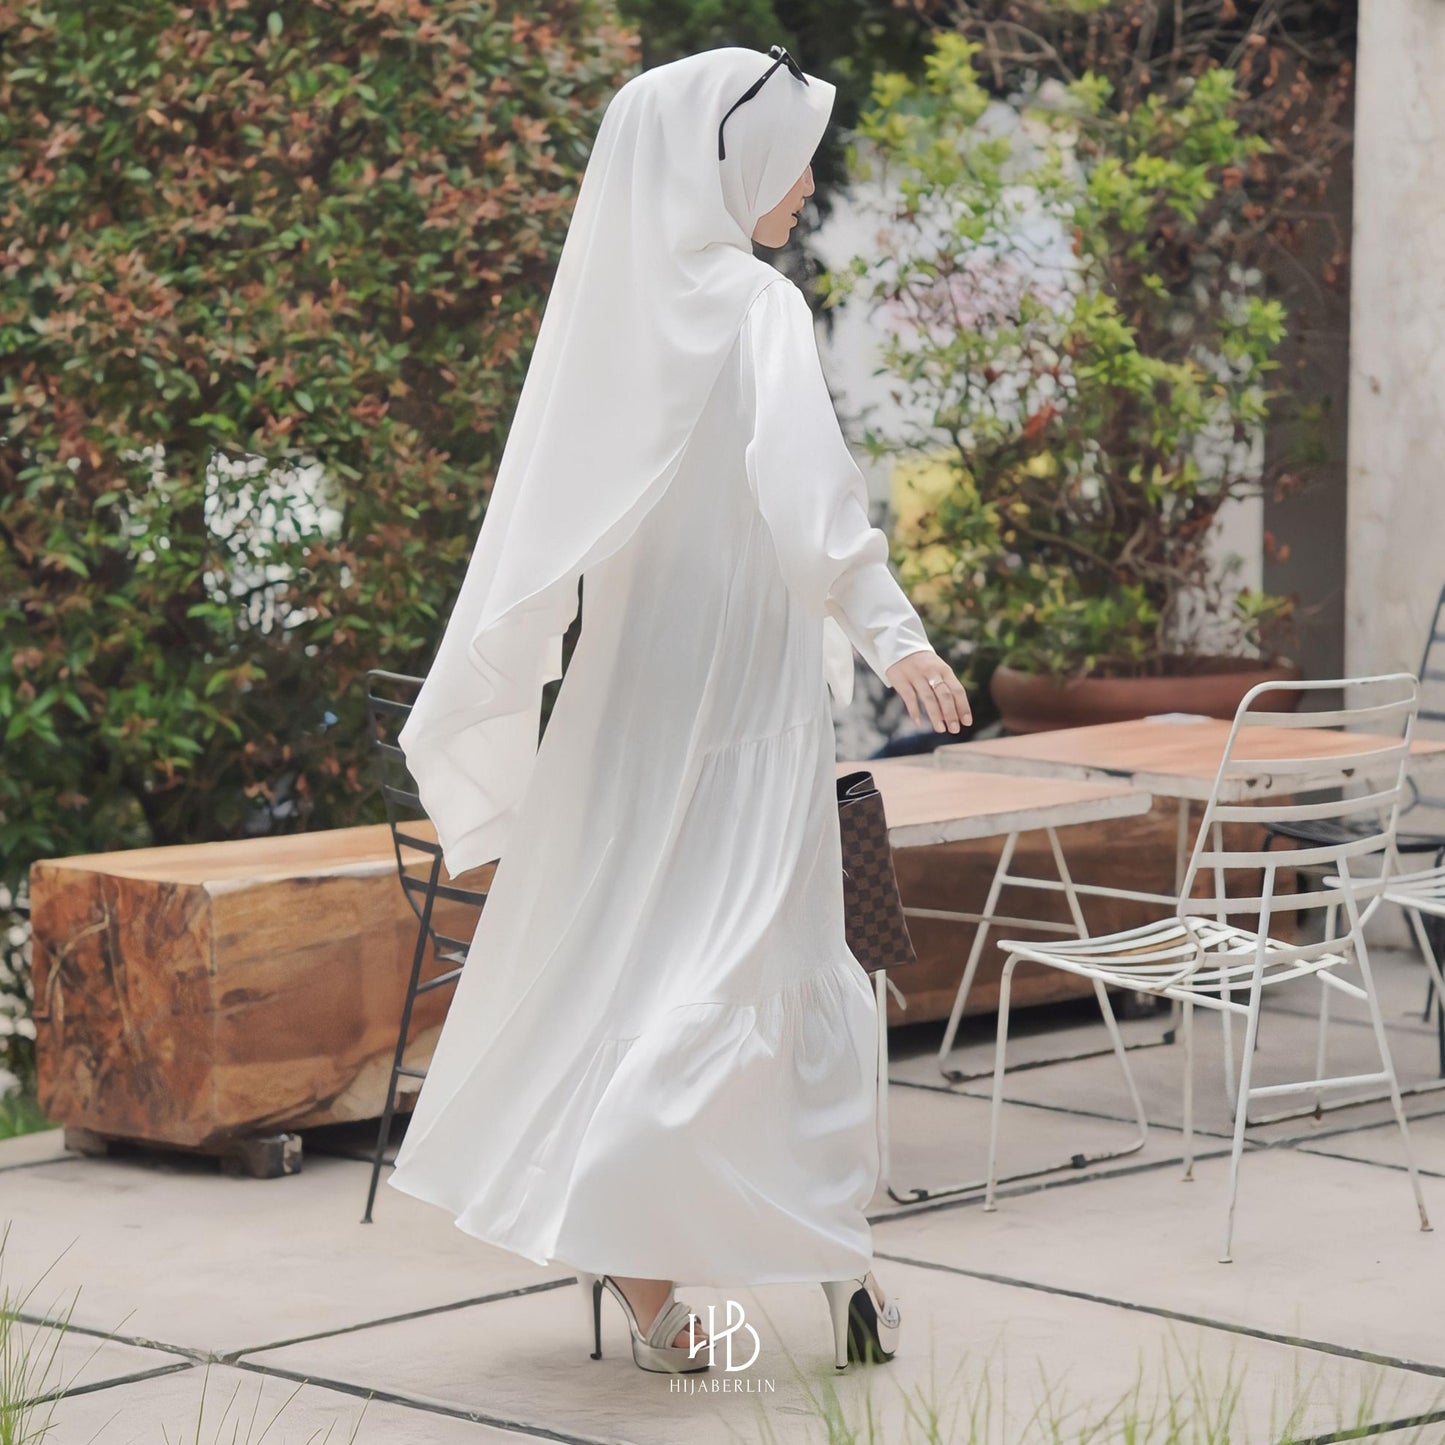 Lashira Dress Hijaberlin - White